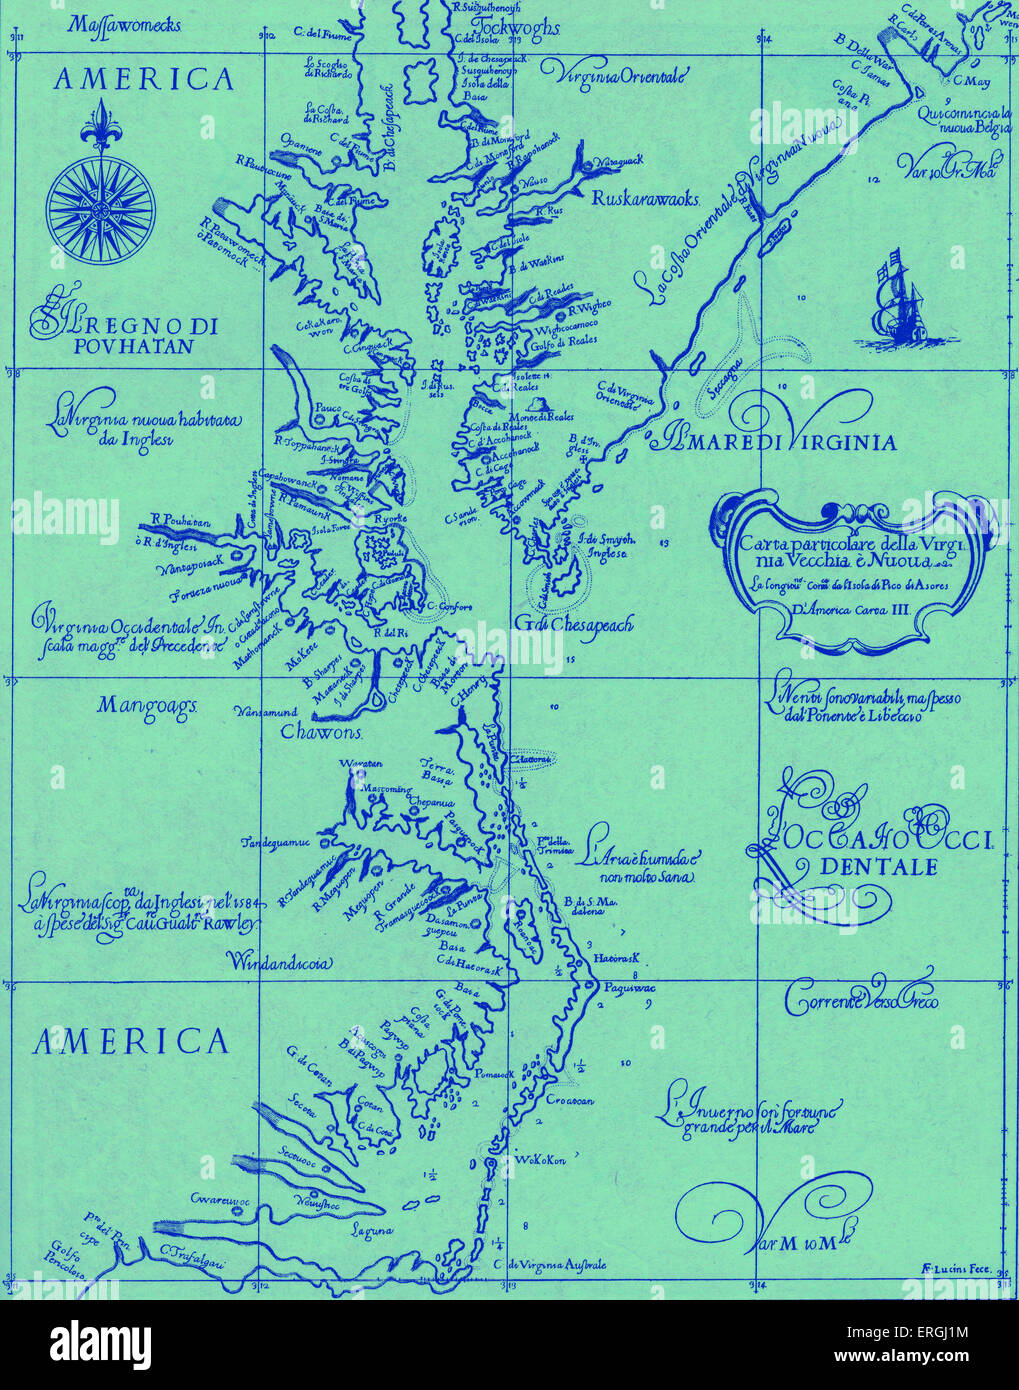 Karte von alten und neuen Virginia - veröffentlicht in Dudleys 'Dell 'arkano del Mare", 1646 - 47. Amerikanischen Kolonien. Stockfoto